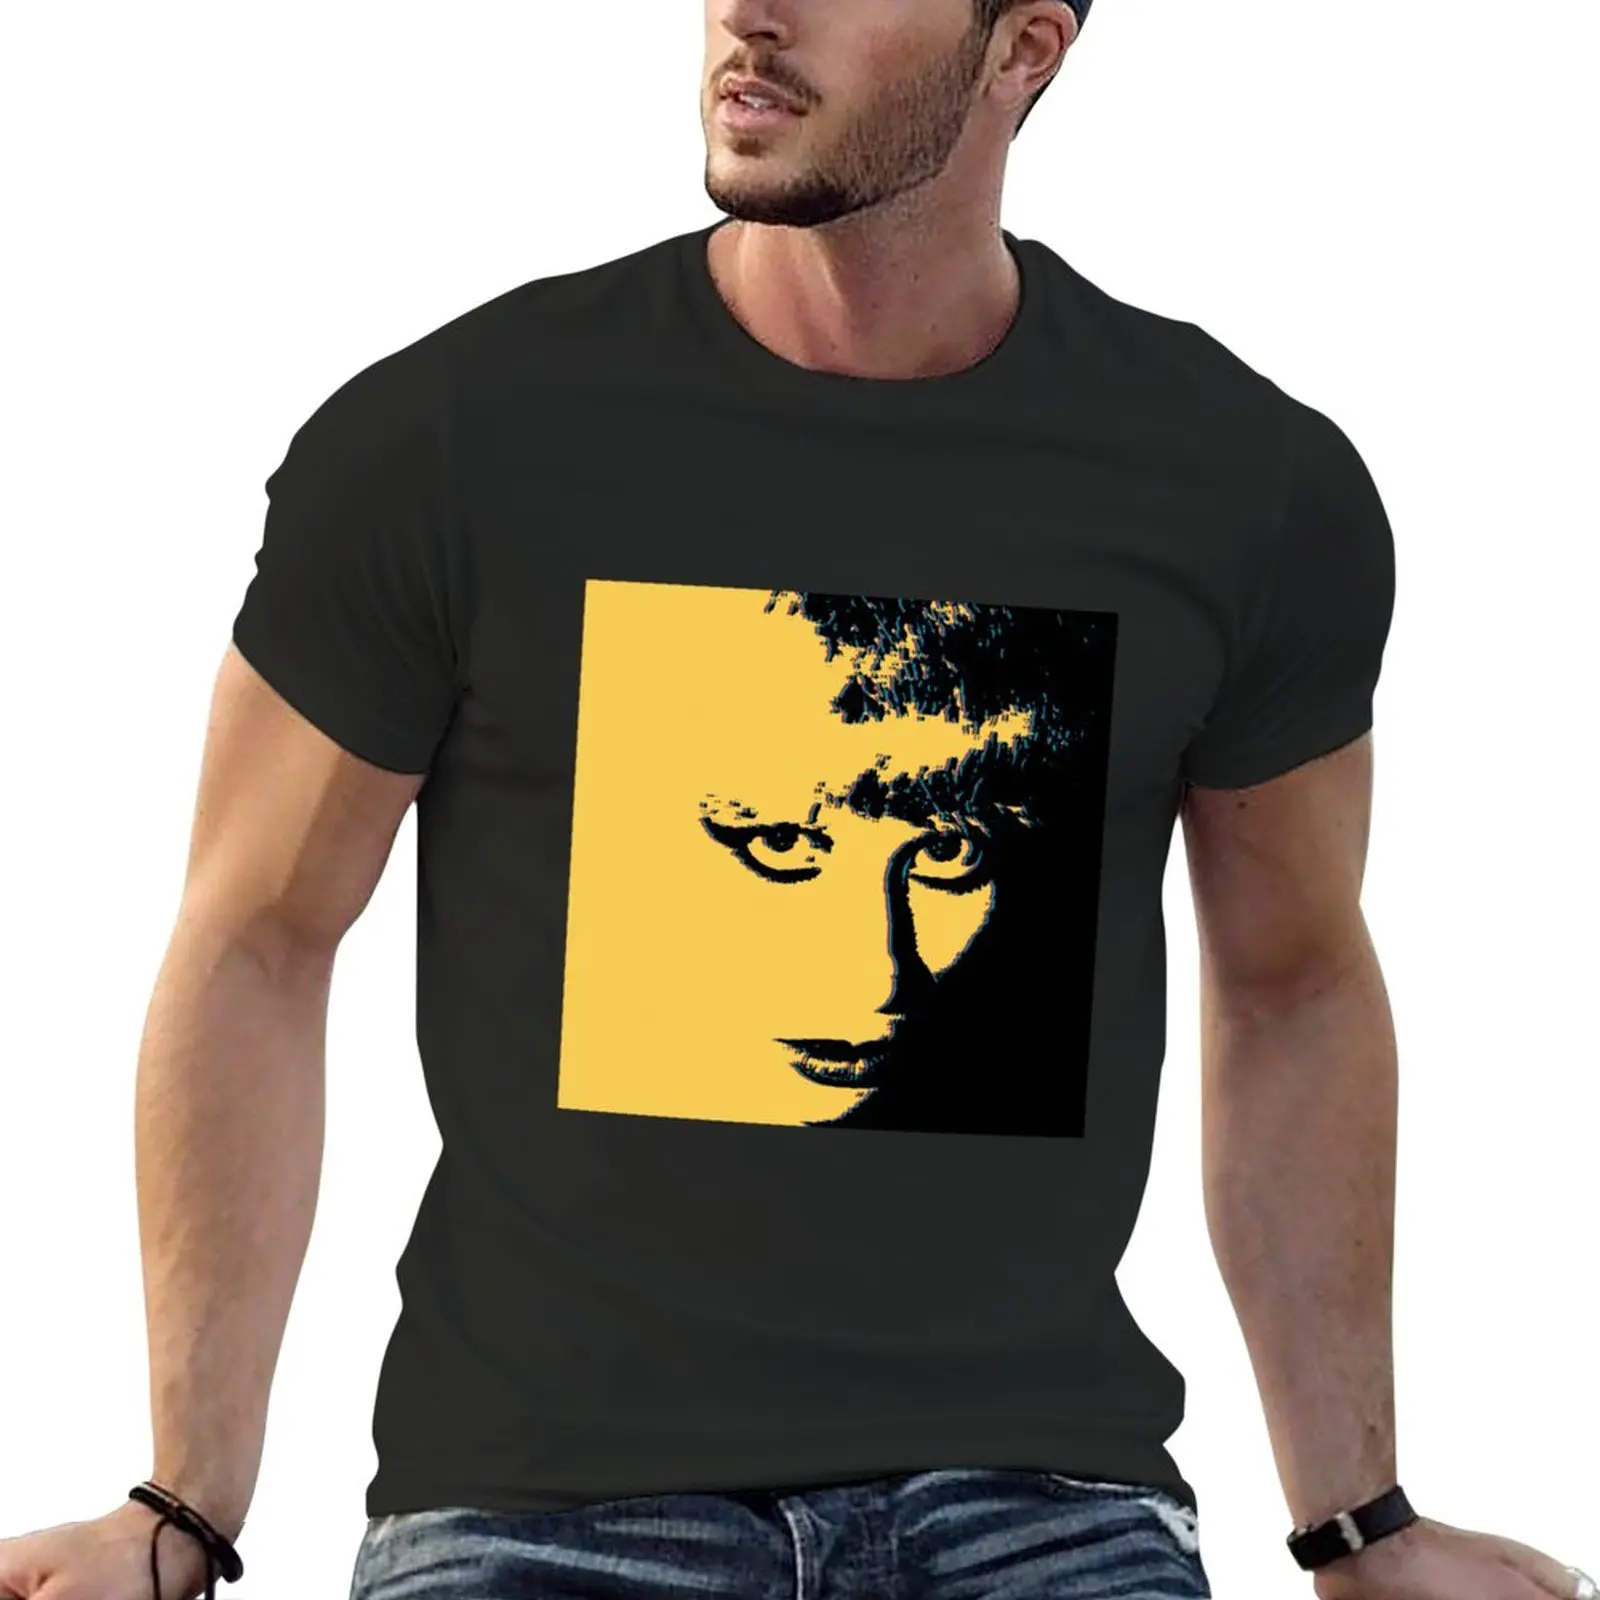 Хейзел О'Коннор Графический дизайн в стиле ретро-поп-арт| Идеальный подарок, футболка, одежда kawaii, черные футболки, мужская футболка